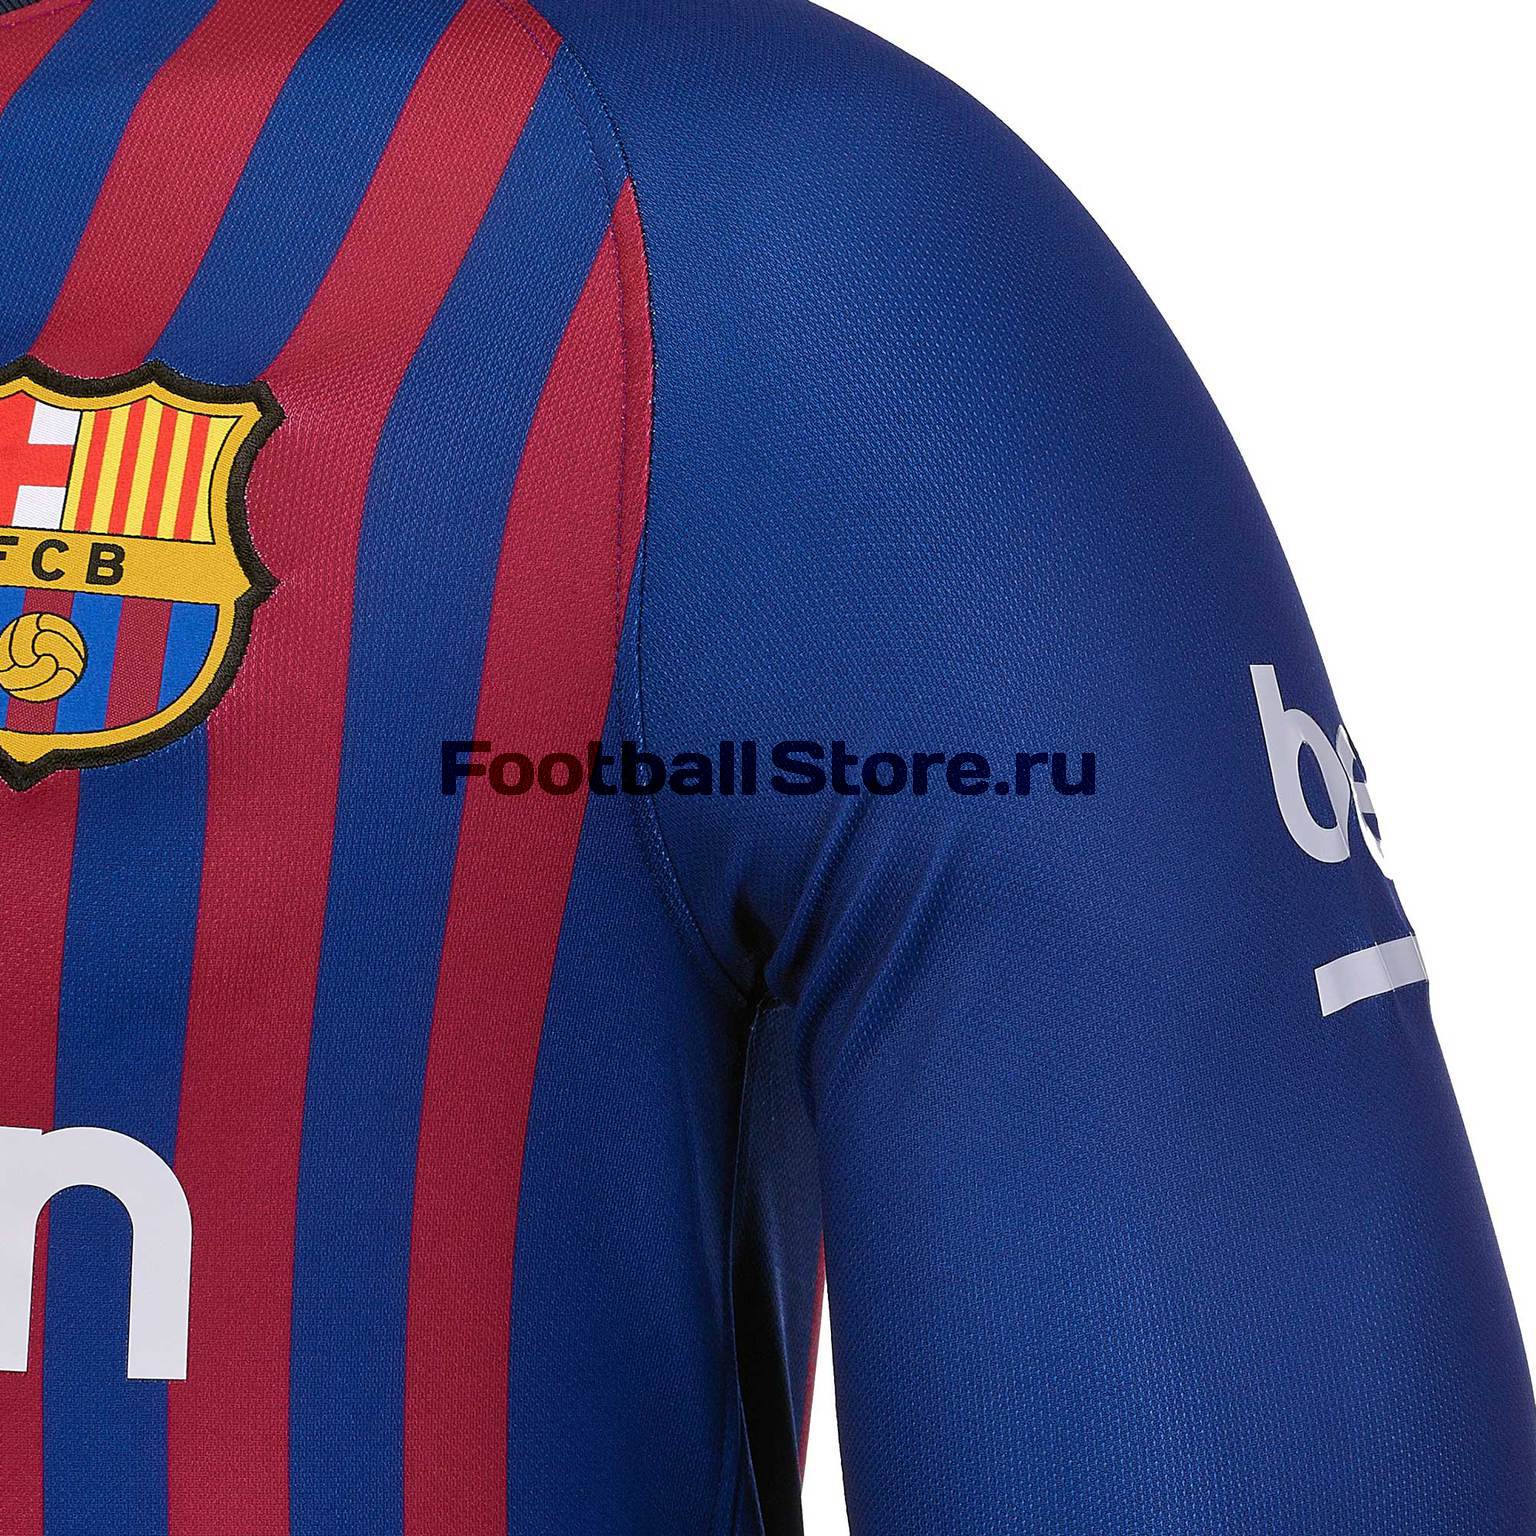 Футболка игровая домашняя Nike Barcelona 2018/19